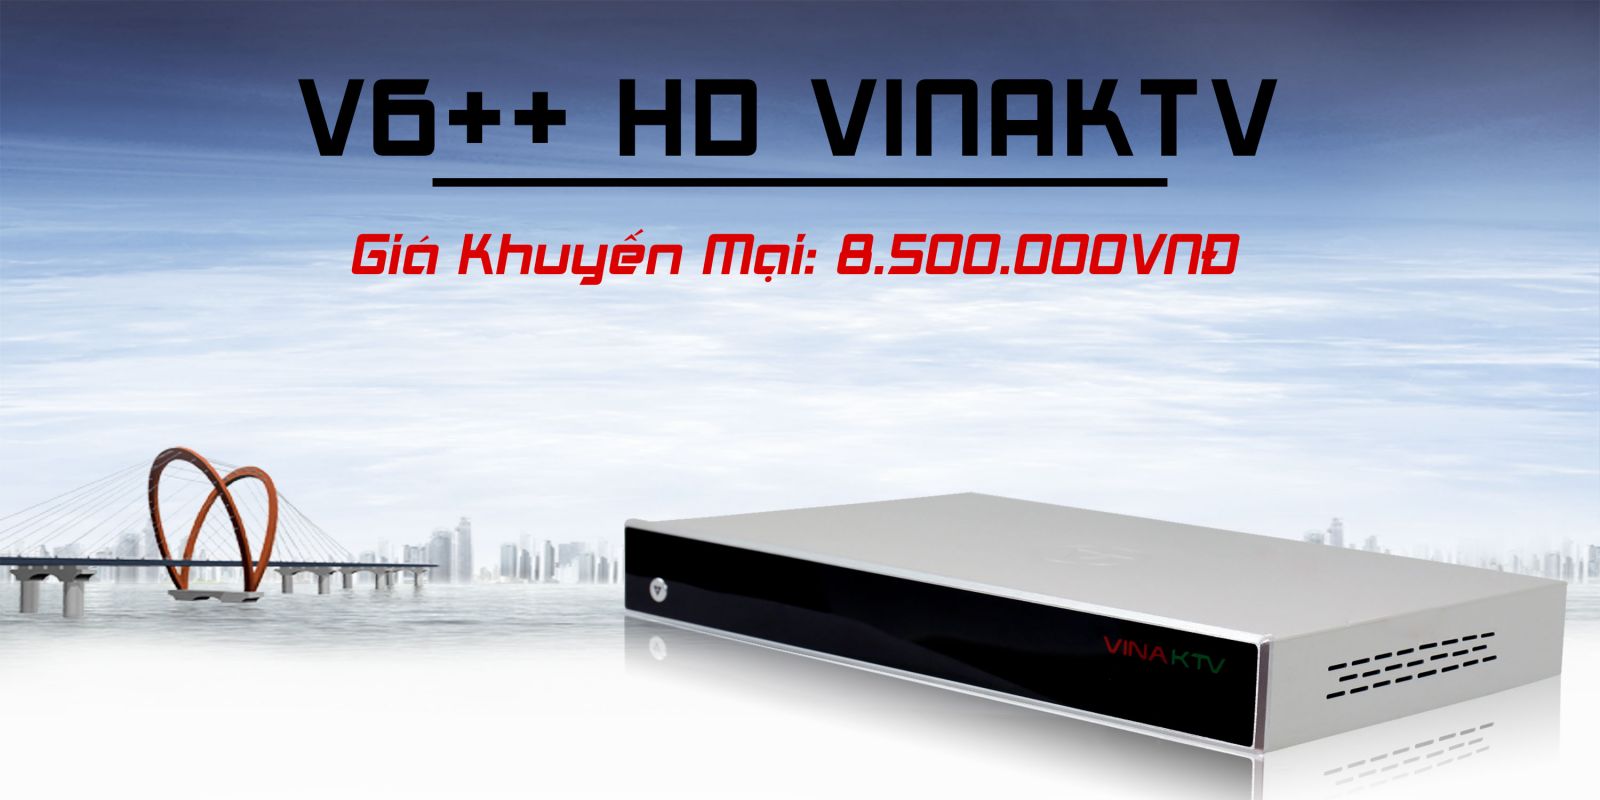 Đầu karaoke VOD V6++ HD 3TB